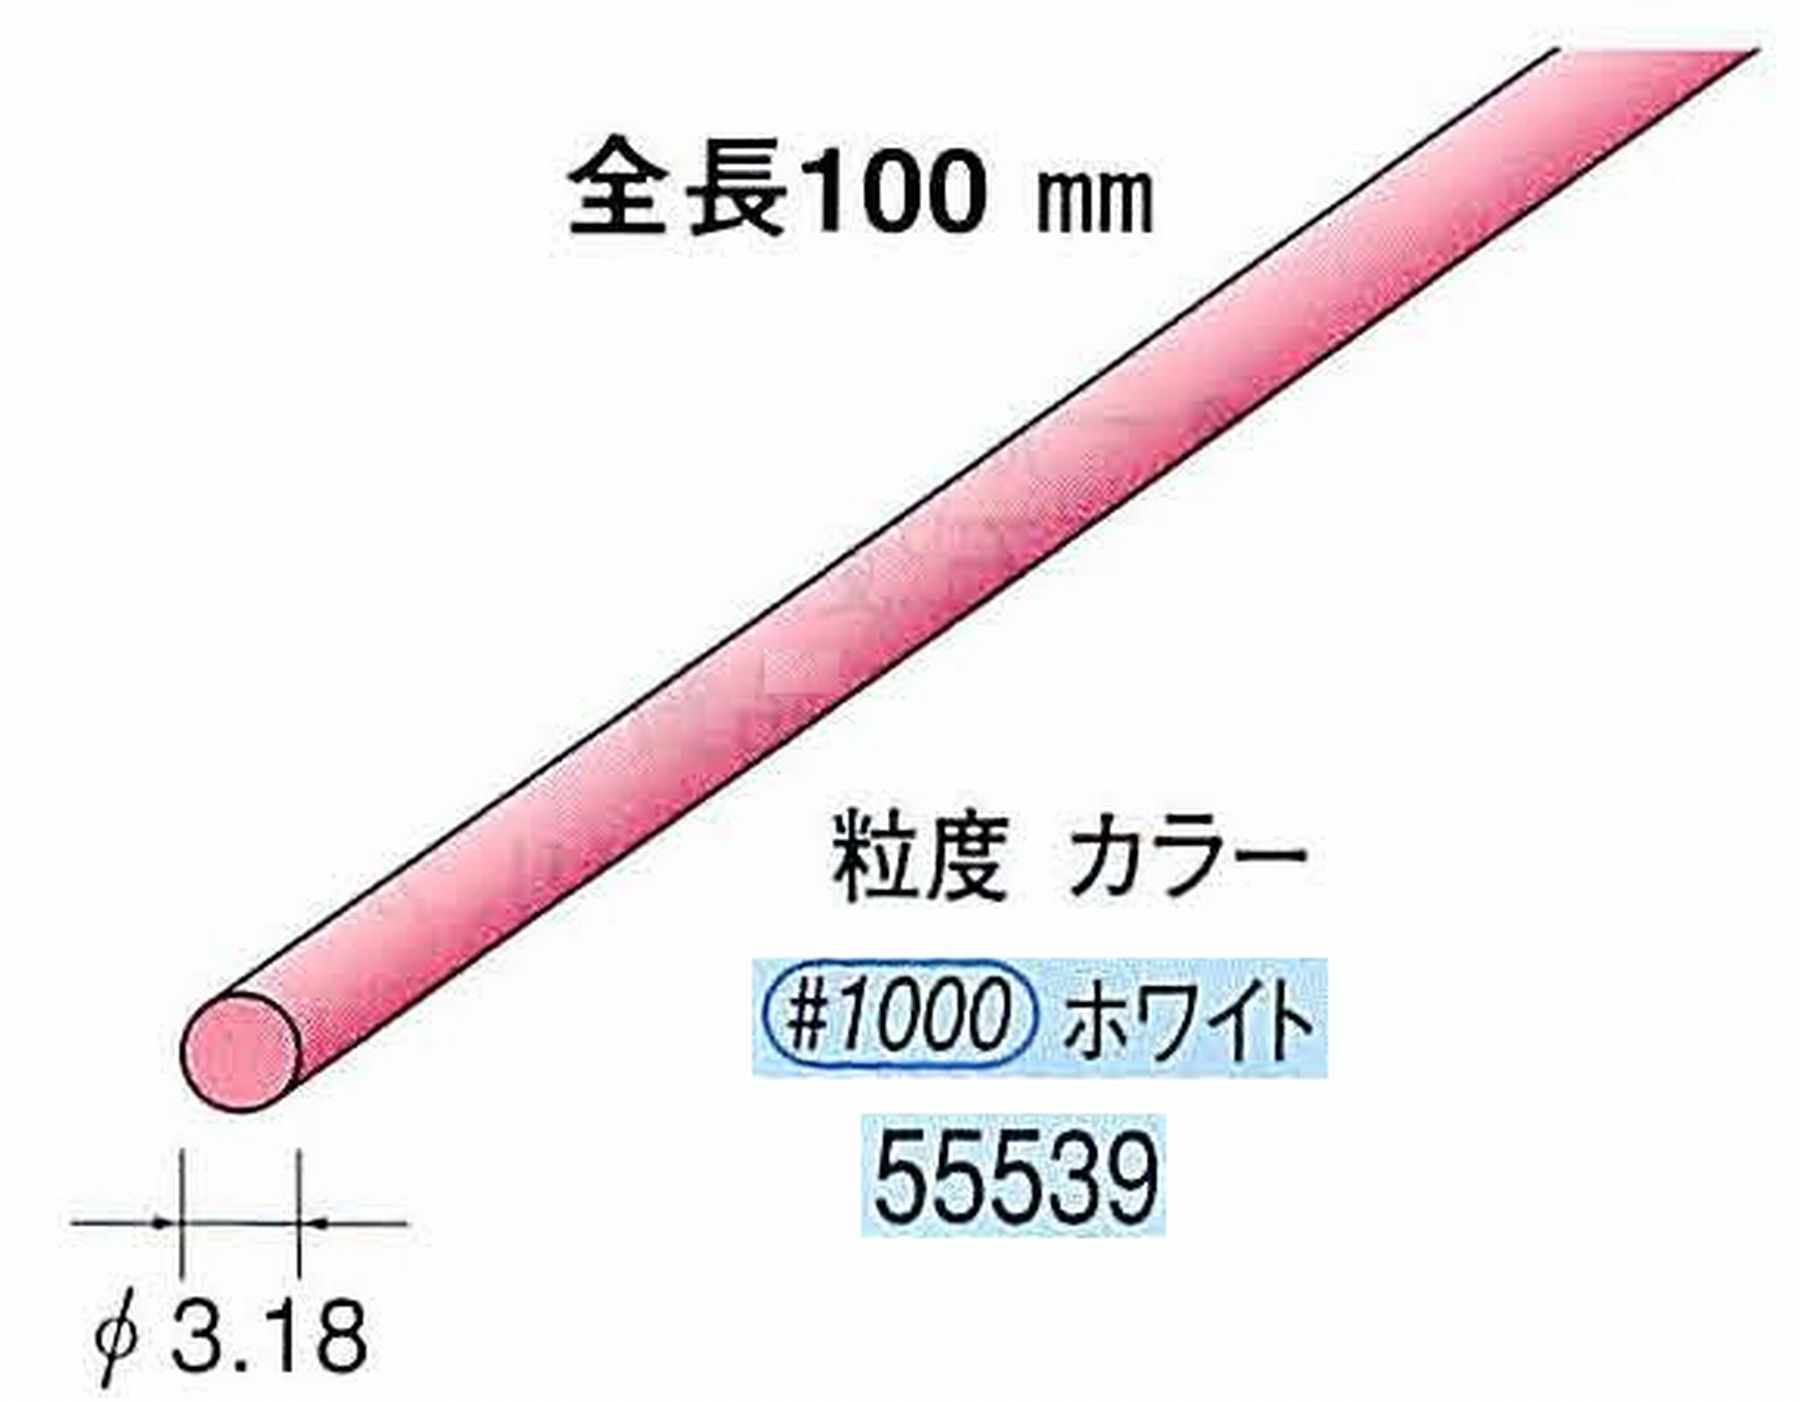 ナカニシ/NAKANISHI セラファイバー砥石 全長100mm ホワイト φ3.18mm 55539